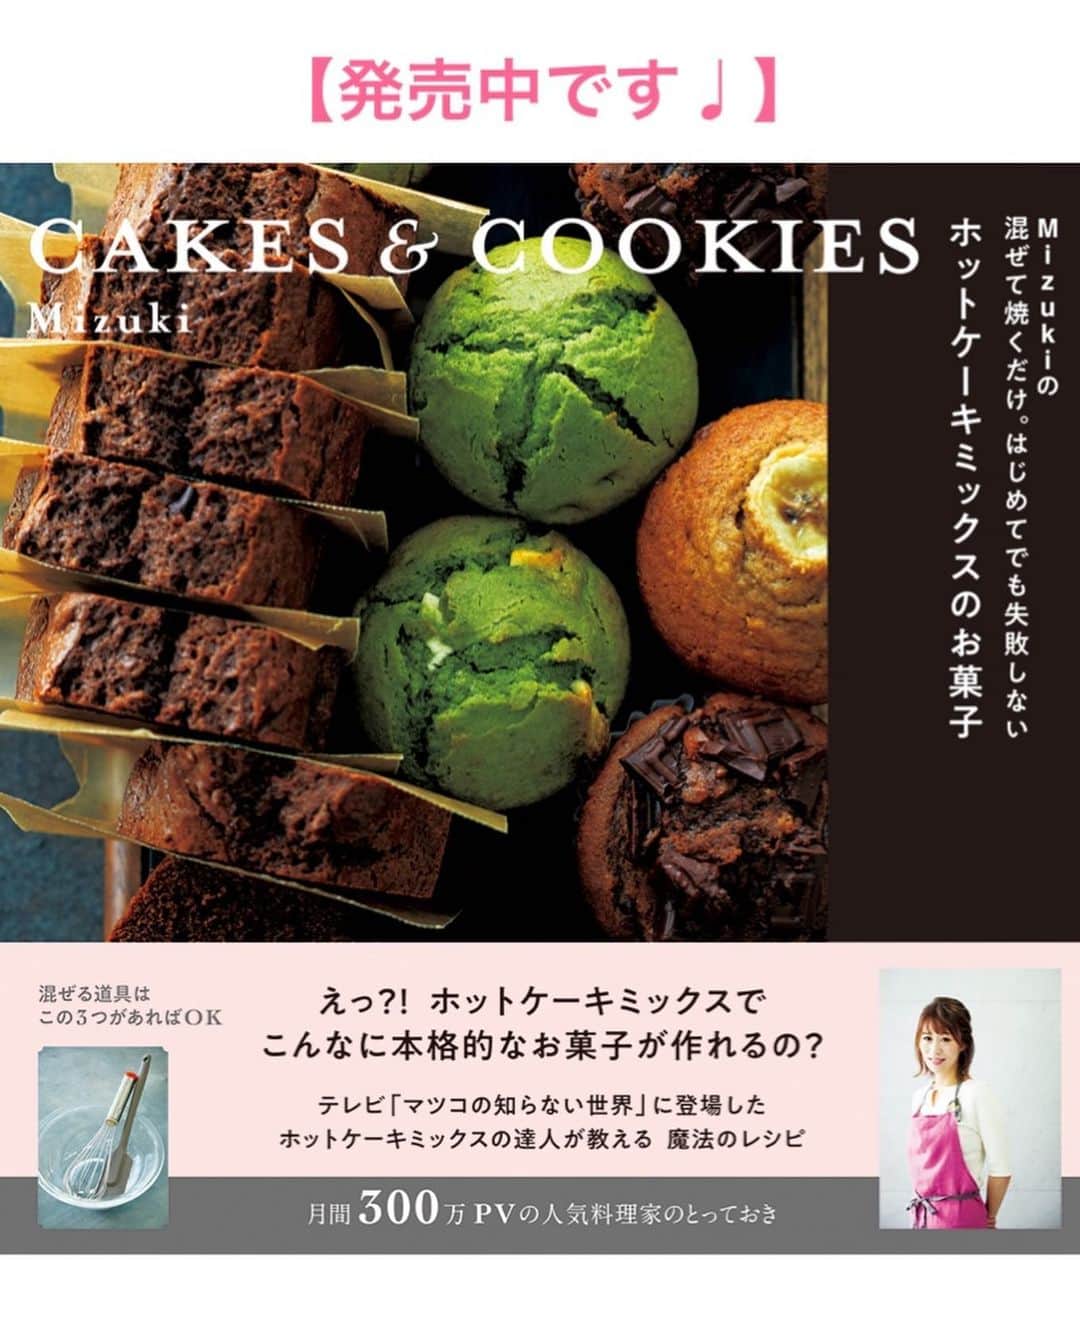 Mizuki【料理ブロガー・簡単レシピ】さんのインスタグラム写真 - (Mizuki【料理ブロガー・簡単レシピ】Instagram)「・﻿ 【レシピ】ーーーーーーー﻿ ♡チョコ好きさんに捧ぐ♡﻿ 超濃厚チョコテリーヌ﻿ ーーーーーーーーーーーー﻿ ﻿ おはようございます(*^^*)﻿ 今日はバレンタインにもおすすめの﻿ チョコレシピをご紹介させて頂きます♩﻿ ﻿ 濃厚なチョコレート生地を﻿ しっとり焼き上げたチョコテリーヌ♡﻿ 上質で香り高くとろける食感は﻿ まさに高級スイーツ！！﻿ ﻿ なのに作り方は超簡単(*´艸`)﻿ 生地はどんどん混ぜるだけ！！﻿ 材料は少なく工程も単純で﻿ 焼き時間も短いのです♡﻿ 生地は湯煎にかけながら作り﻿ 湯煎焼きで仕上げると﻿ あのとろける食感が生まれますよ♩﻿ ﻿ ﻿ ーーーーーーーーーーーーーーーーーー﻿ 【18cmパウンド型1台分】﻿ チョコレート(ブラック)...200g﻿ 無塩バター...100g﻿ 砂糖...大2﻿ 卵...3個﻿ 生クリーム...50ml﻿ (好みで)無糖ココア...適量﻿ ﻿ ﻿ ［準備］﻿ 型にクッキングシートを敷く。﻿ チョコとバターは細かく切る。﻿ 卵は溶きほぐしておく。﻿ 湯煎用・湯煎焼き用のお湯を沸かしておく。﻿ オーブンを180度に予熱する。﻿ ﻿ 1.チョコとバターをボウルに入れ、湯煎にかけて溶かす。﻿ 2. (湯煎にかけたまま)砂糖を加えて混ぜ、続けて溶き卵を少しずつ加えながらその都度よく混ぜる。最後に生クリームも加えて混ぜる。﻿ 3. 生地を型に注ぎ、湯煎用の熱湯を注いだバット(天板)に乗せ、予熱したオーブンで18〜20分焼く。(焼き上がり→中はフルフルの状態でOK!)﻿ 焼けたら型に入れたまま冷まし、冷蔵庫で一晩以上しっかり冷やす。仕上げにココアを振る。﻿ ーーーーーーーーーーーーーーーーーー﻿ ﻿ ﻿ 《ポイント》﻿ ♦︎チョコとバターは予め軽くレンチンしてから湯煎にかけると早く溶けます♩﻿ ♦︎生地作りは終始湯煎にかけたまま行って下さい♩﻿ ♦︎焼き上がりは中がフルフルの状態です！固まる程焼いてしまうと焼き過ぎなので注意して下さいね☆﻿ ♦︎一晩以上しっかり冷やして下さい♩冷蔵庫で5日は保存できますよ♩﻿ ♦︎ナイフを温めると綺麗に切れる&断面がとろけて美味しそうに♩﻿ ﻿ ﻿ ﻿ ＿＿＿＿＿＿＿＿＿＿＿＿＿＿＿＿＿﻿ ＿＿＿＿＿＿＿＿＿＿＿＿＿＿＿＿＿﻿ 🎀新刊発売中🎀﻿ 【#ホットケーキミックスのお菓子 】﻿ ﻿ 今回は一冊まるっとホケミスイーツ♩﻿ 普段のおやつから﻿ 特別な日にも使えるレシピを﻿ この一冊に詰め込みました(*^^*)﻿ ホットケーキミックスを使えば﻿ 簡単に本格的なお菓子が作れますよ♡﻿ バレンタインにもご活用下さいませ♩﻿ ﻿ 🔹ハイライトにリンクあります♩🔹﻿ ＿＿＿＿＿＿＿＿＿＿＿＿＿＿＿＿＿﻿ ＿＿＿＿＿＿＿＿＿＿＿＿＿＿＿＿＿﻿ ﻿ ﻿ ﻿ 【お知らせ】﻿ ストーリーズでは一日数回﻿ 別レシピをご紹介しております(*^^*)﻿ ＊コメントは最新の投稿に下さいますよう﻿ お願い致しますm(_ _)m﻿ ﻿ ﻿ ﻿ #ブログ更新しました﻿ ブログはプロフ画面のリンクよりご覧下さい↓﻿ @mizuki_31cafe﻿ 【Mizuki公式ラインブログ】﻿ https://lineblog.me/mizuki_official/﻿ ﻿ ﻿ ﻿ ﻿ #テリーヌ#チョコテリーヌ#バレンタイン#チョコレート#チョコレートケーキ#テリーヌショコラ﻿ #Mizuki#簡単レシピ#時短レシピ#節約レシピ#料理#レシピ#フーディーテーブル#おうちごはん#おうちカフェ#デリスタグラマー#料理好きな人と繋がりたい#料理ブロガー#おうちごはんlover#器#マカロニメイト#ブログ﻿ #foodpic#follow#cooking#recipe#lin_stagrammer」1月23日 7時05分 - mizuki_31cafe